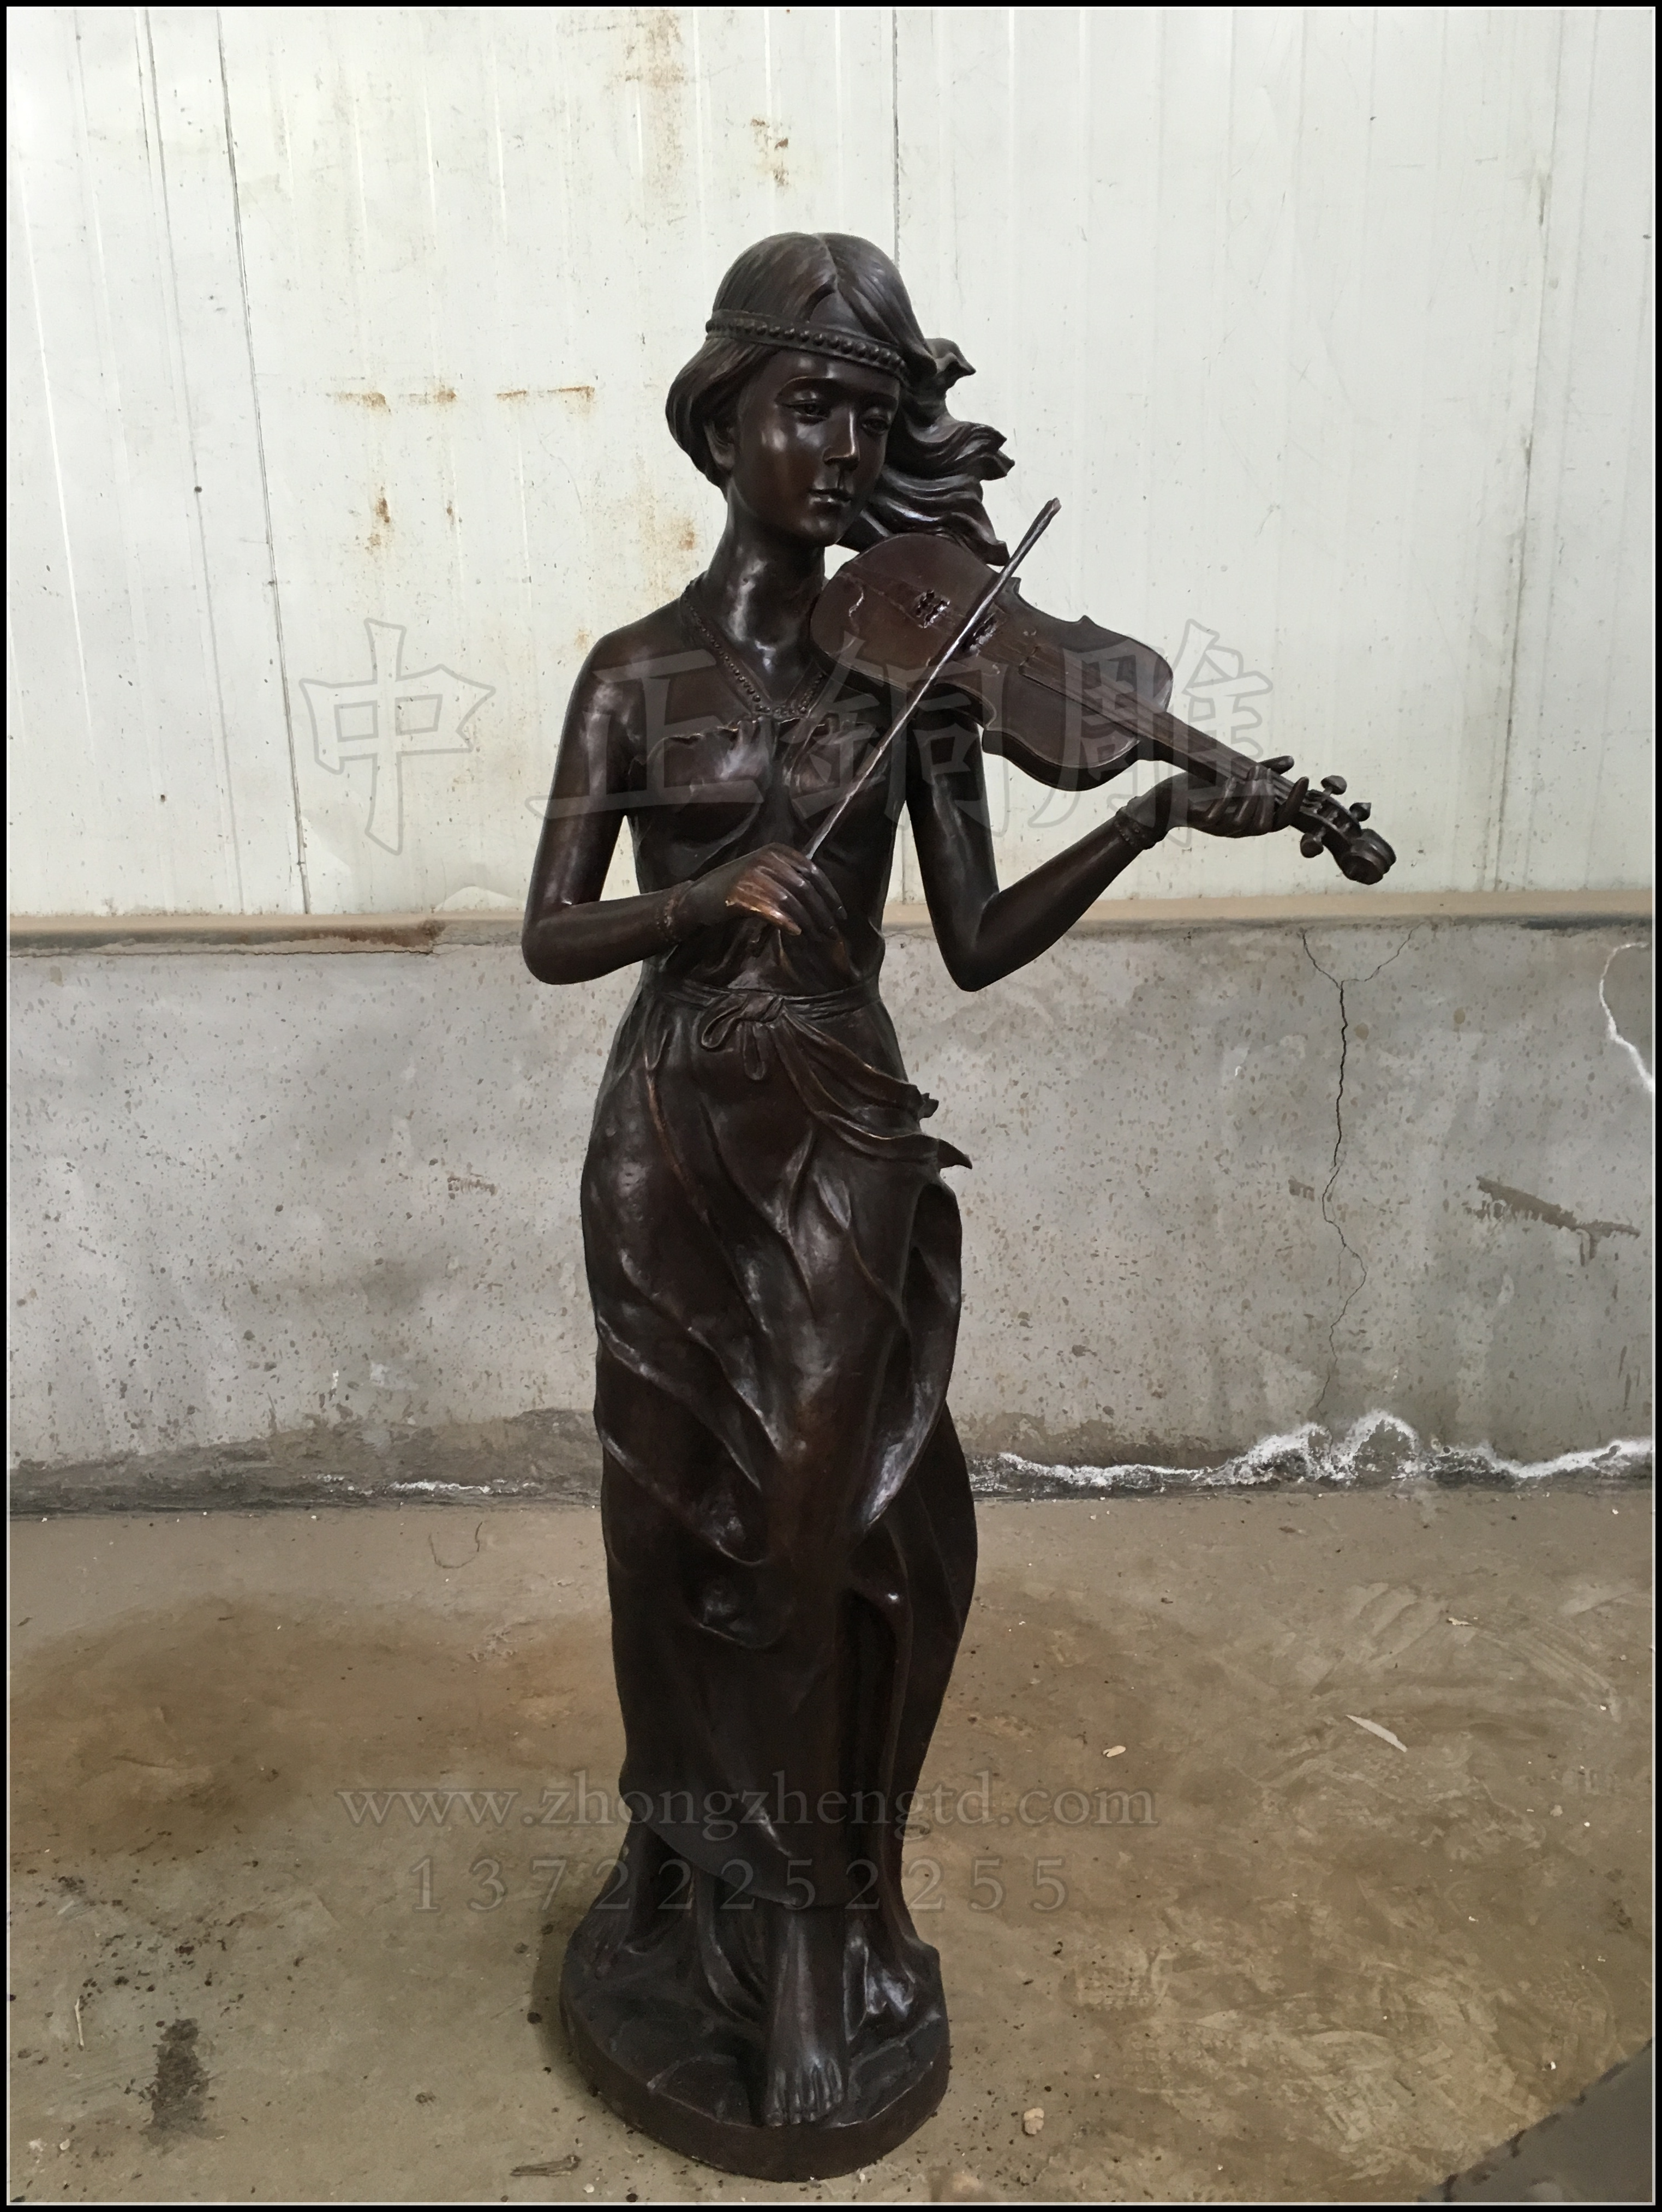 保定市现代人物雕塑  小提琴人物铜雕厂家供应用于广场雕塑|步行街雕塑的现代人物雕塑  小提琴人物铜雕